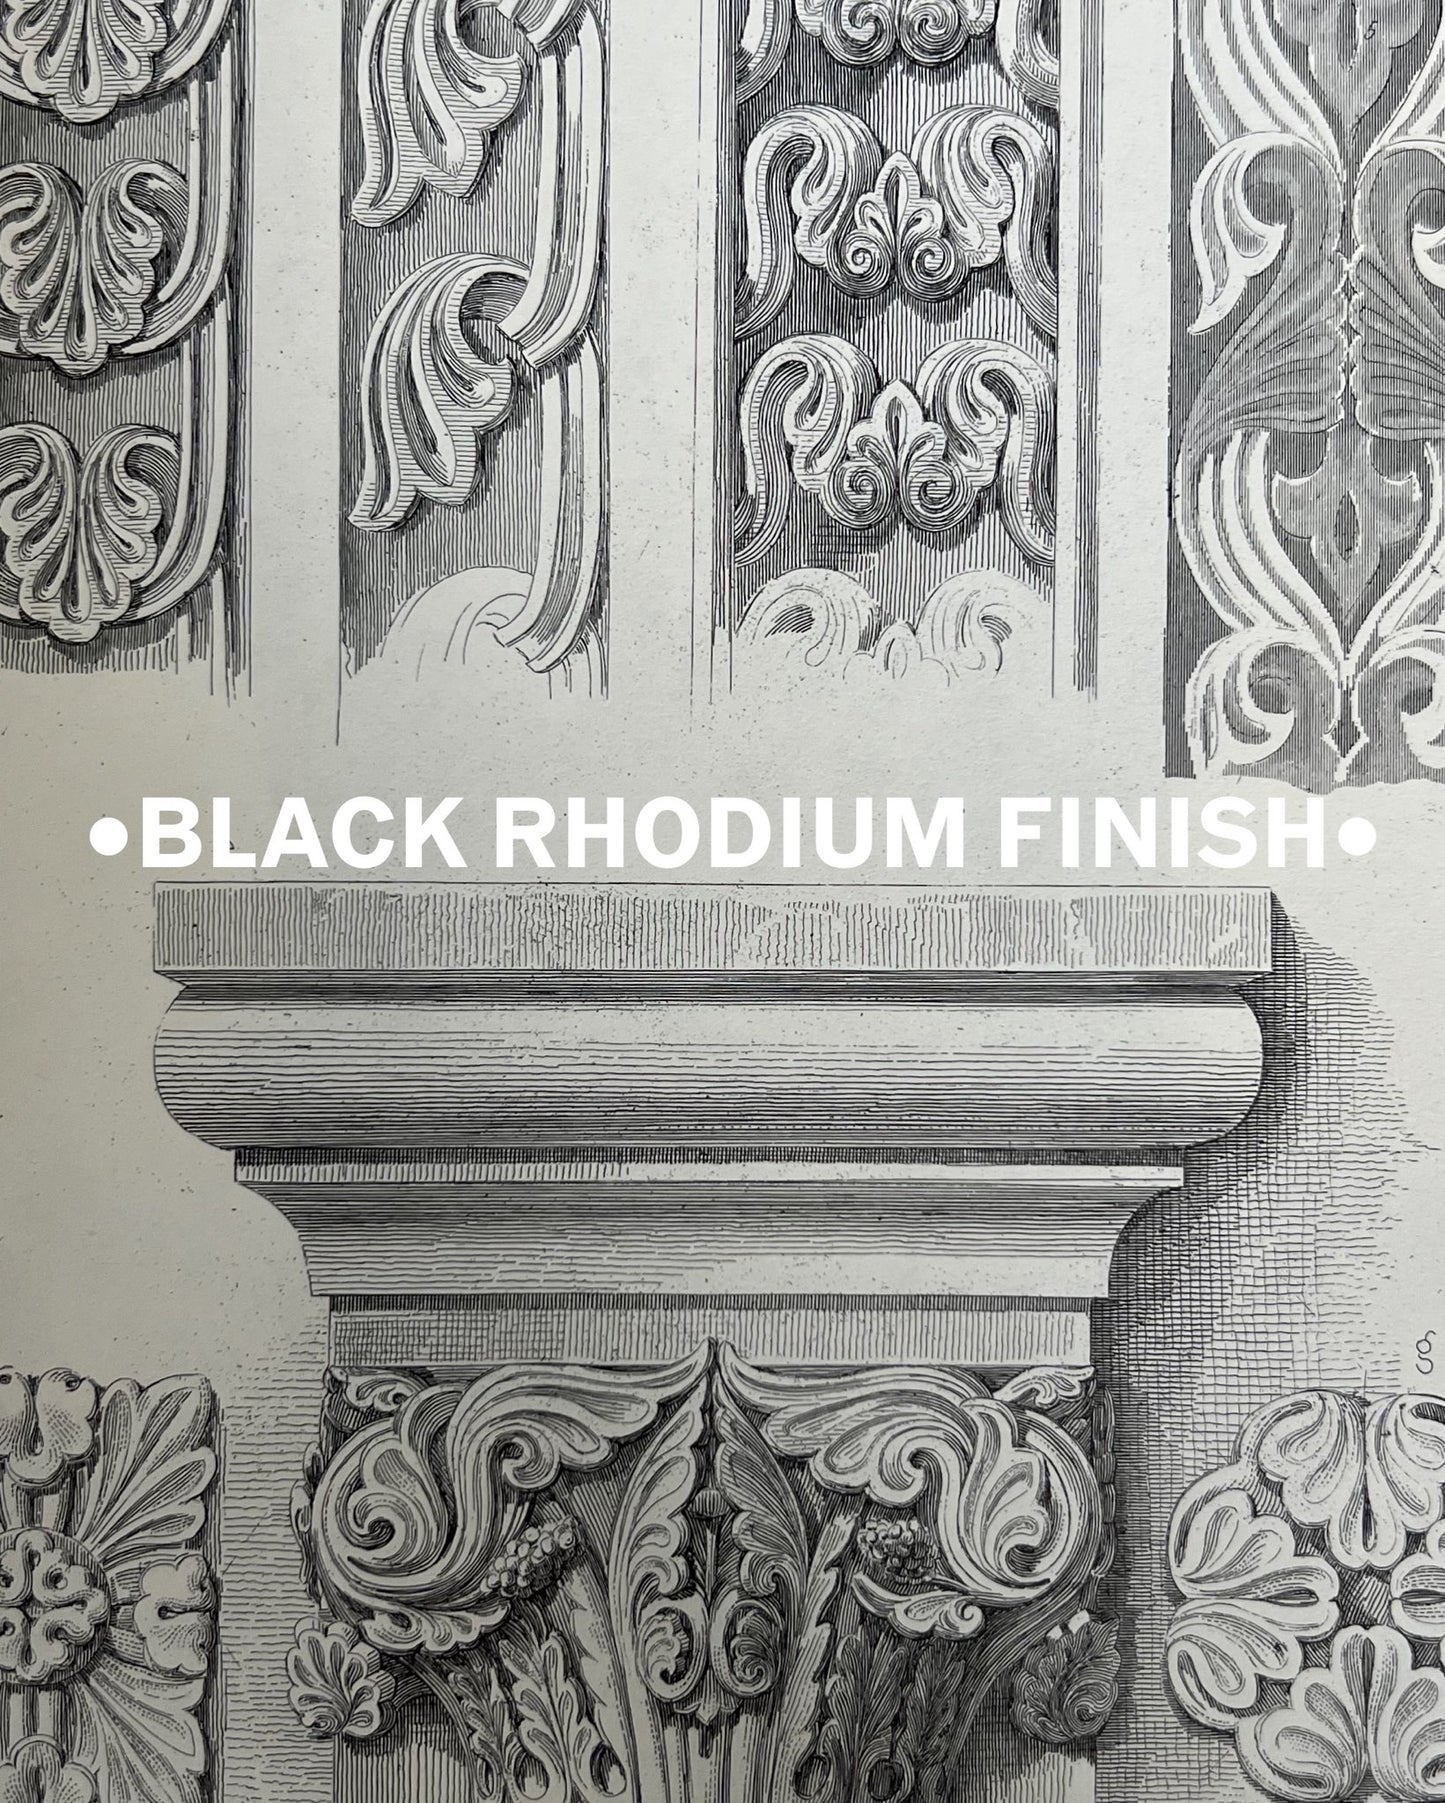 BLACK RHODIUM FINISH